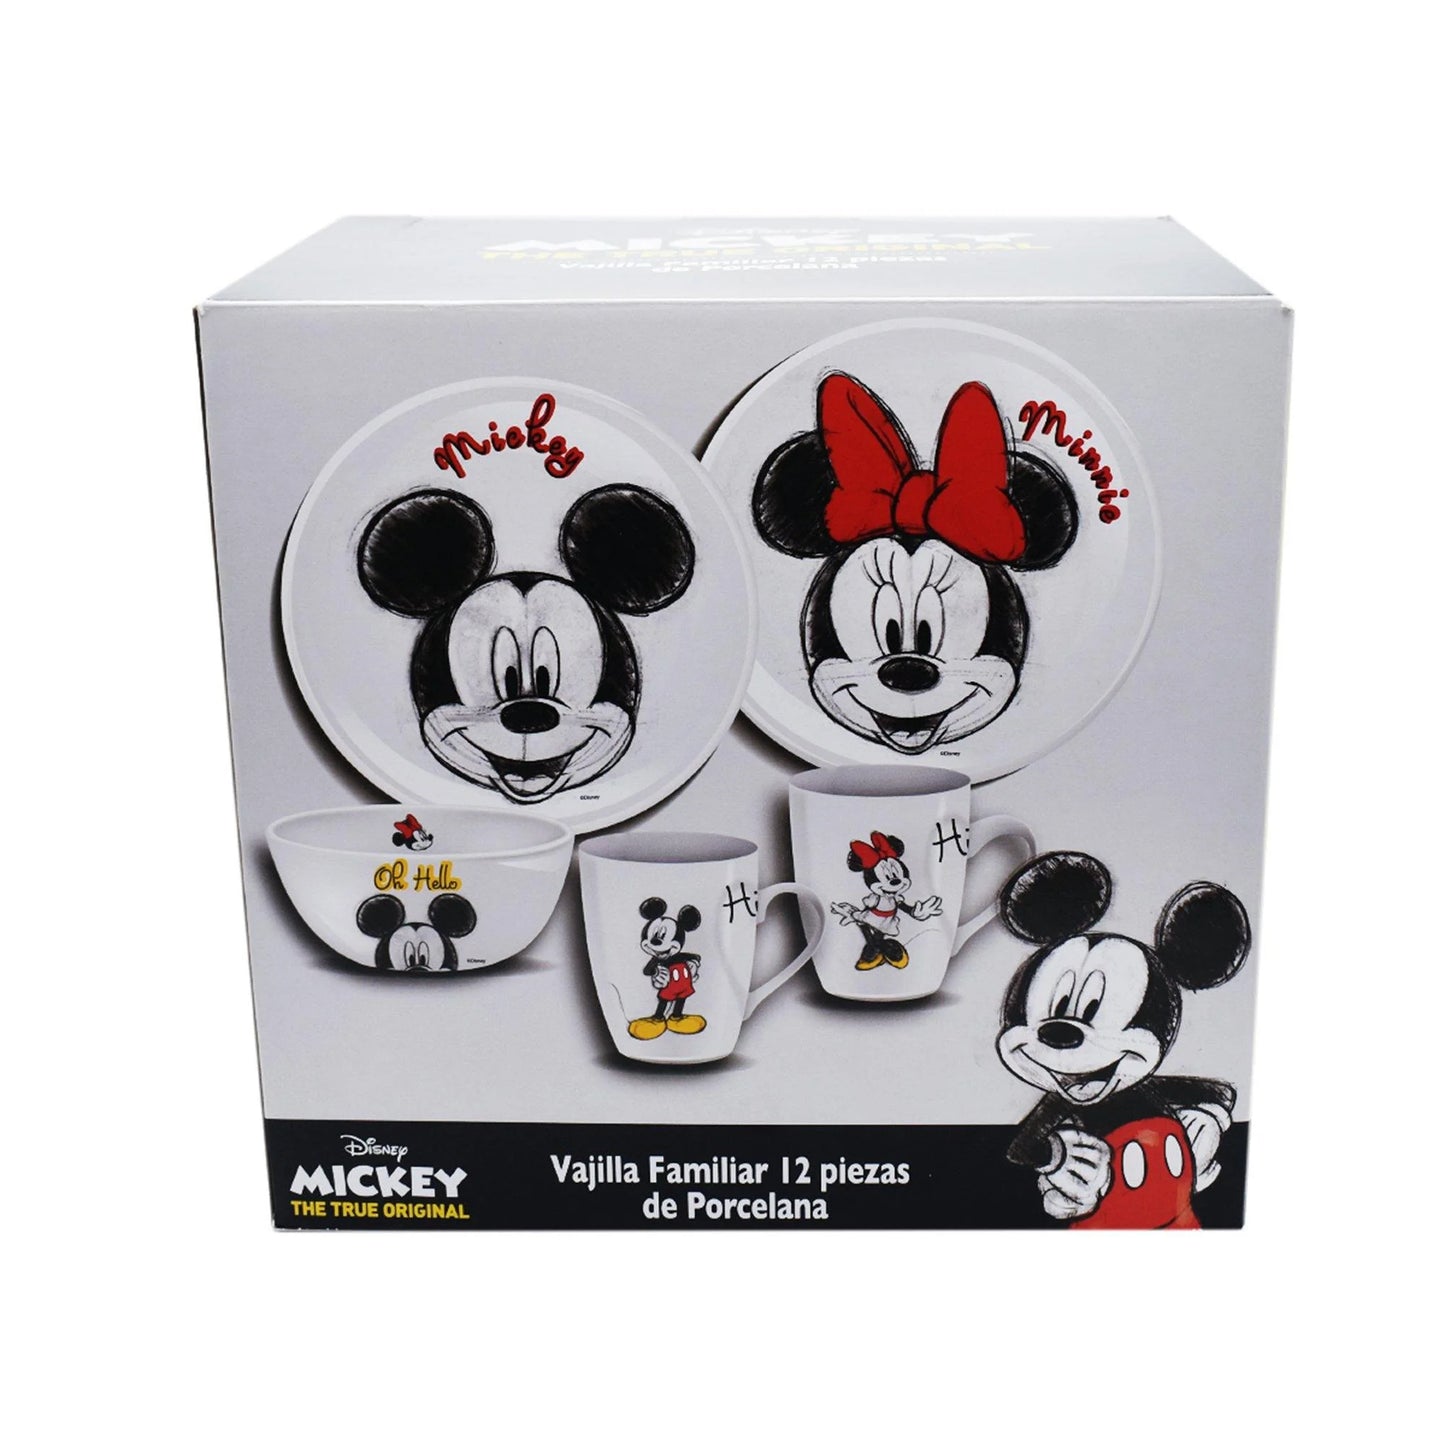 Vajilla Fun Kids Disney Mickey Mouse Porcelana 12pz